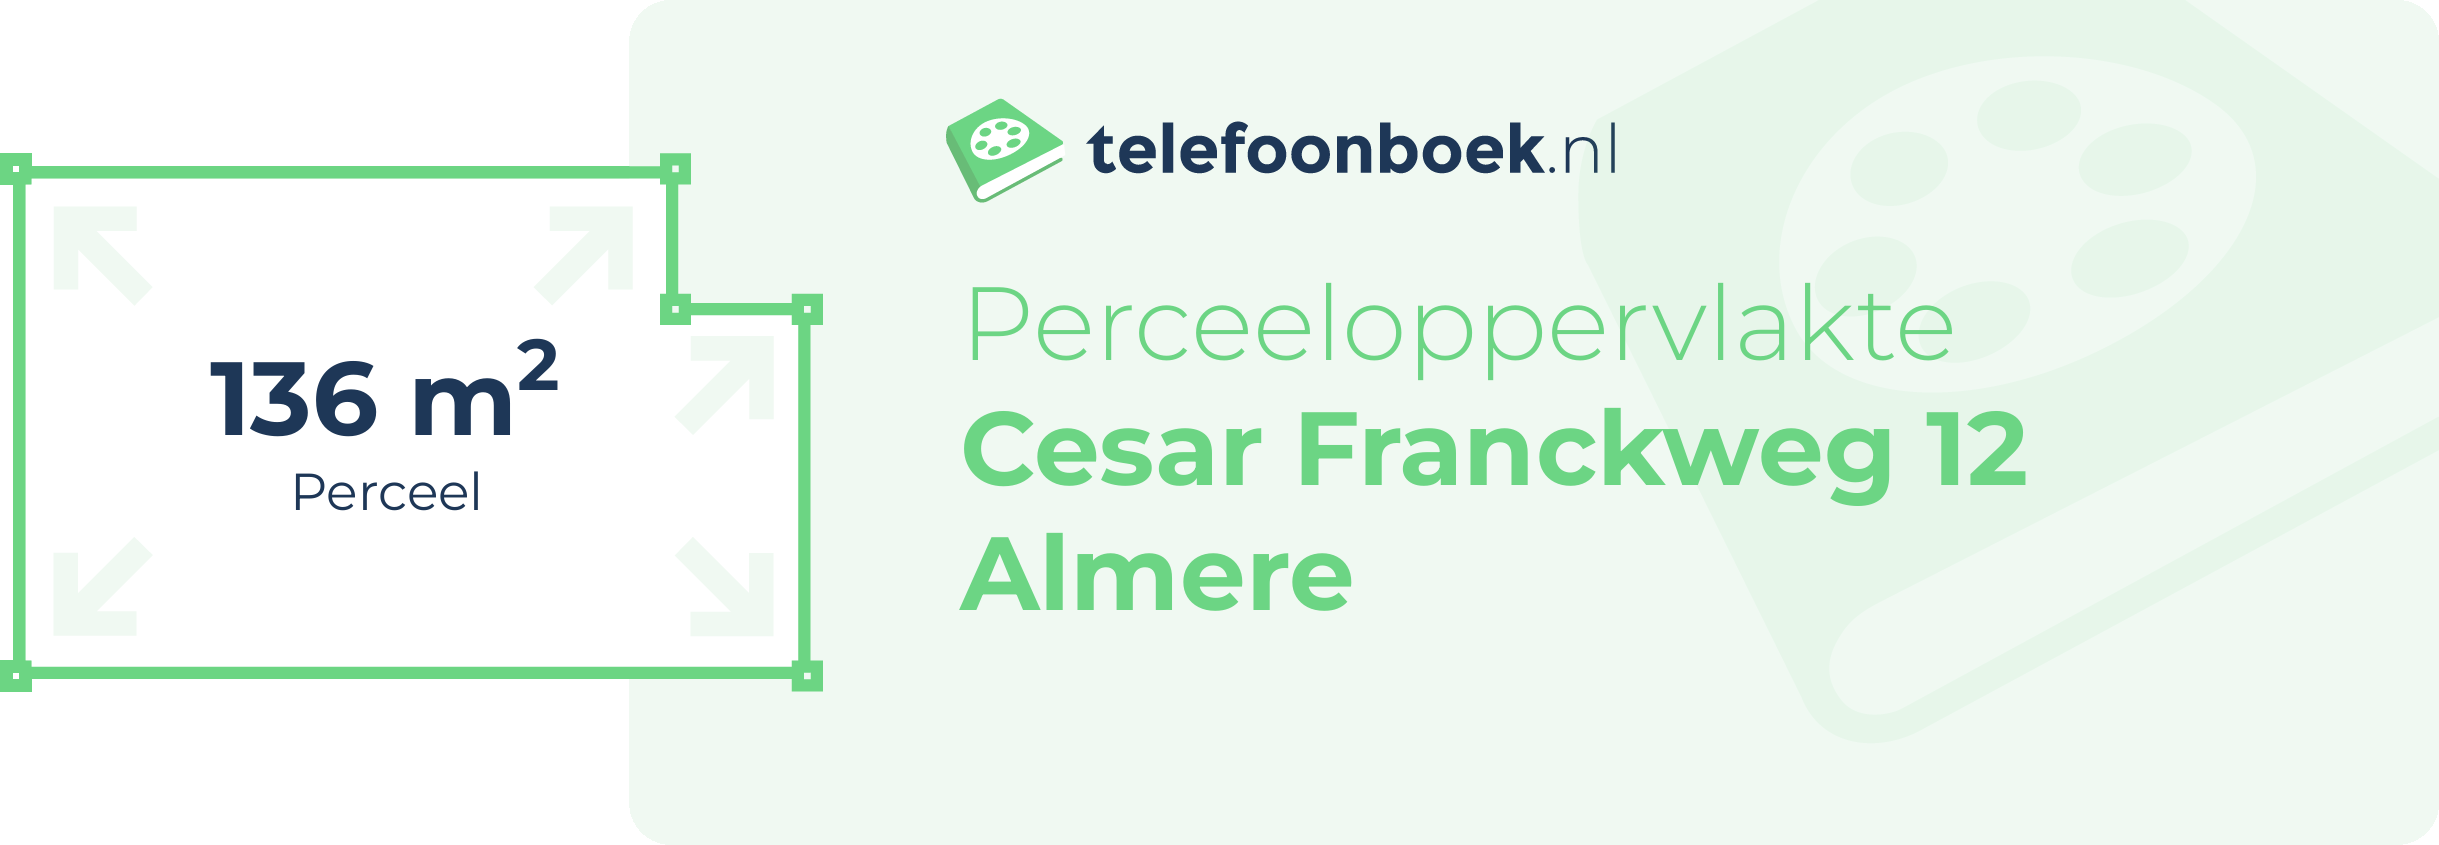 Perceeloppervlakte Cesar Franckweg 12 Almere